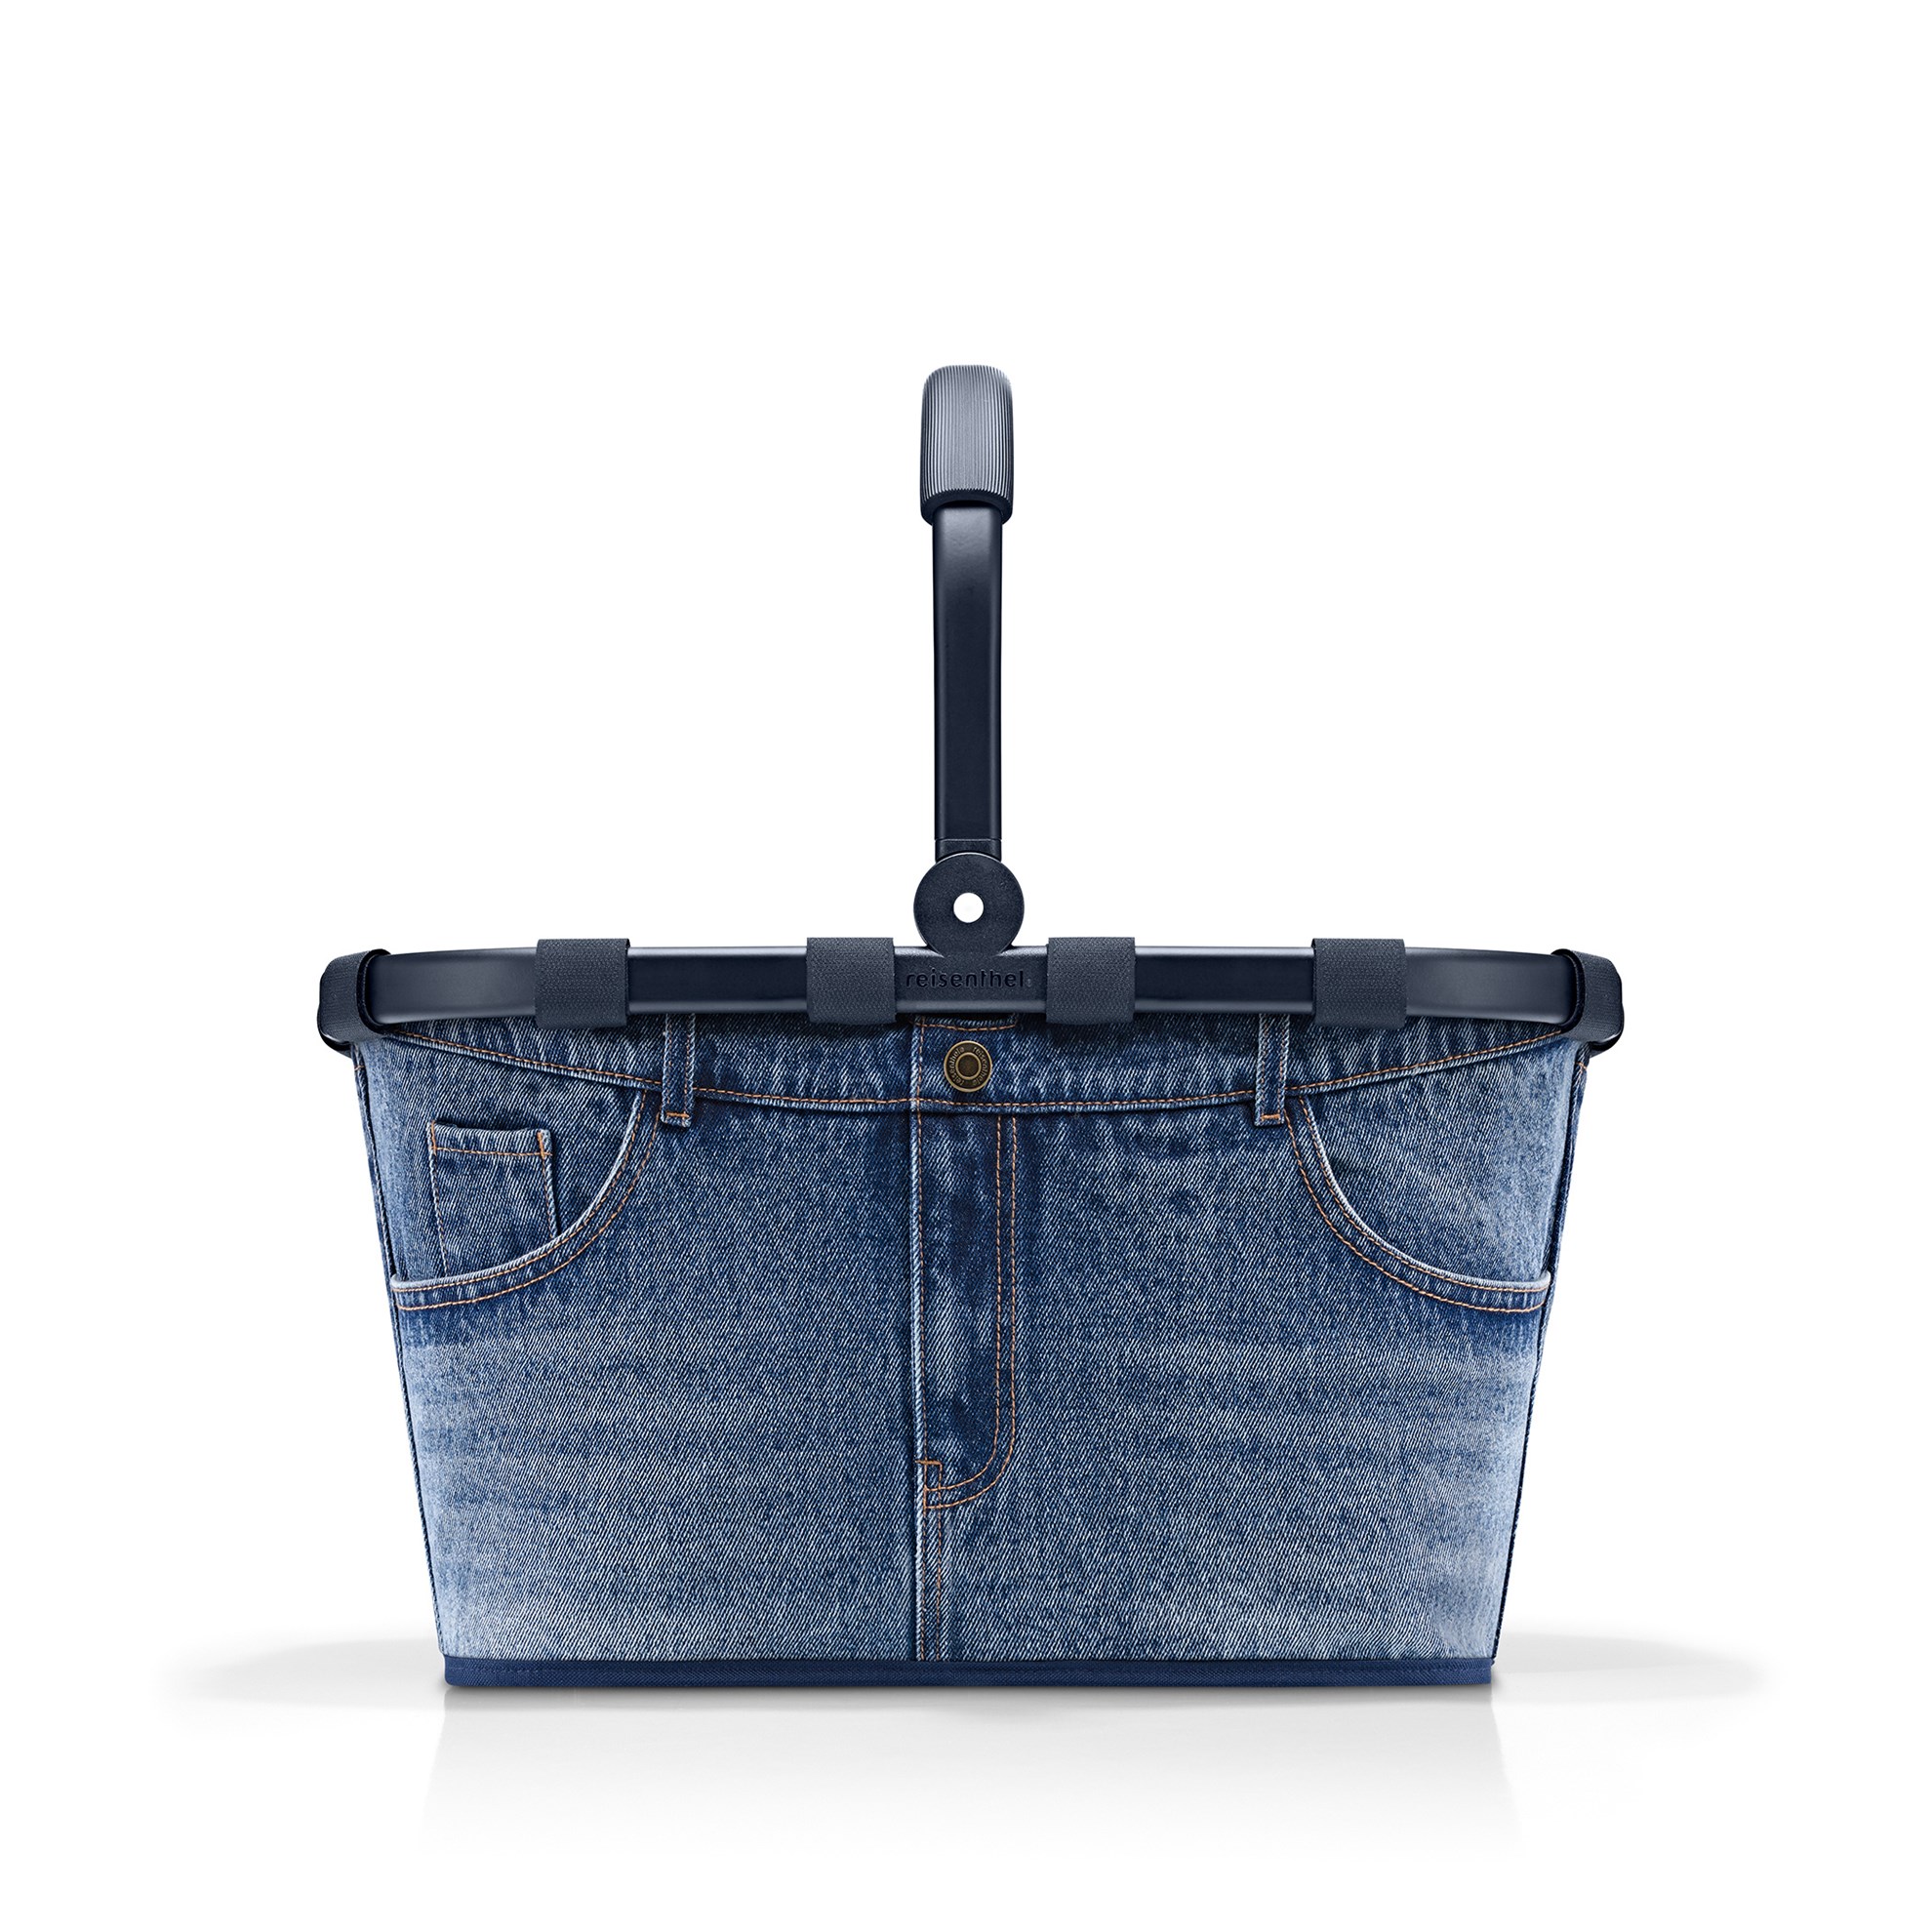 Nákupní košík Carrybag frame jeans classic blue_0